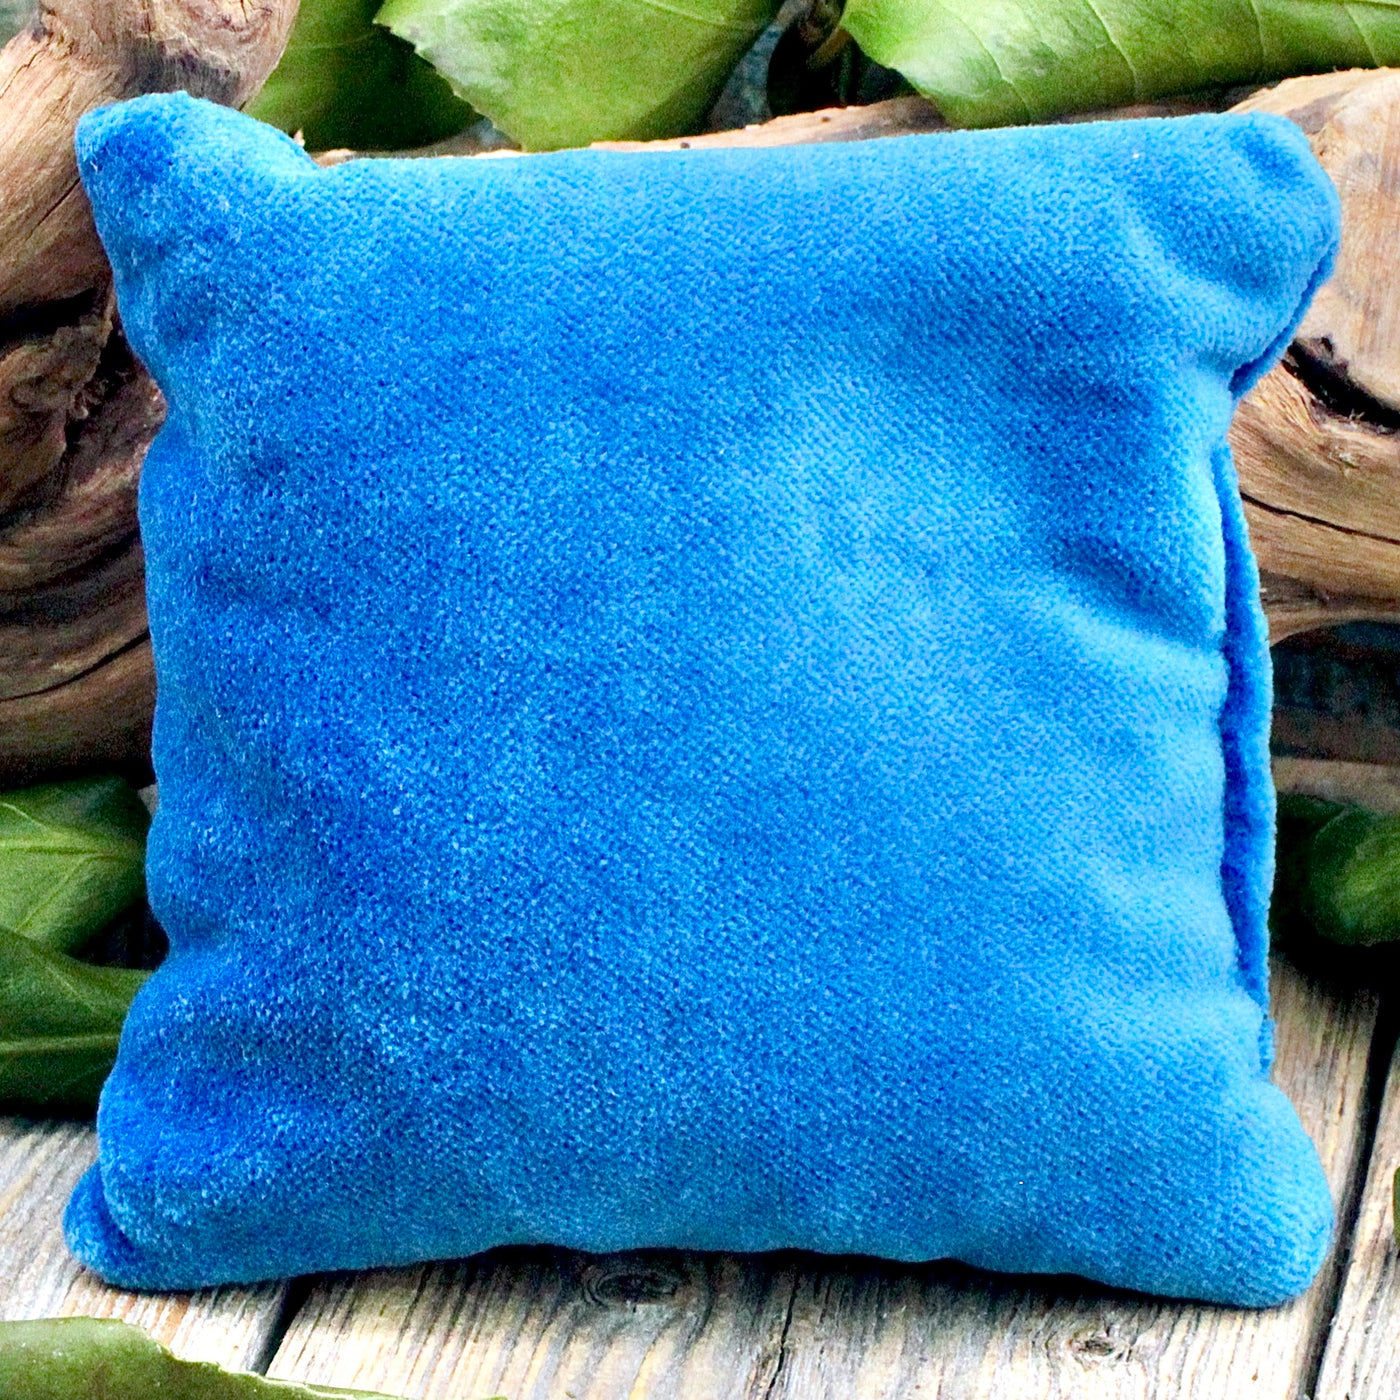 Square Blue Velvet Pillow